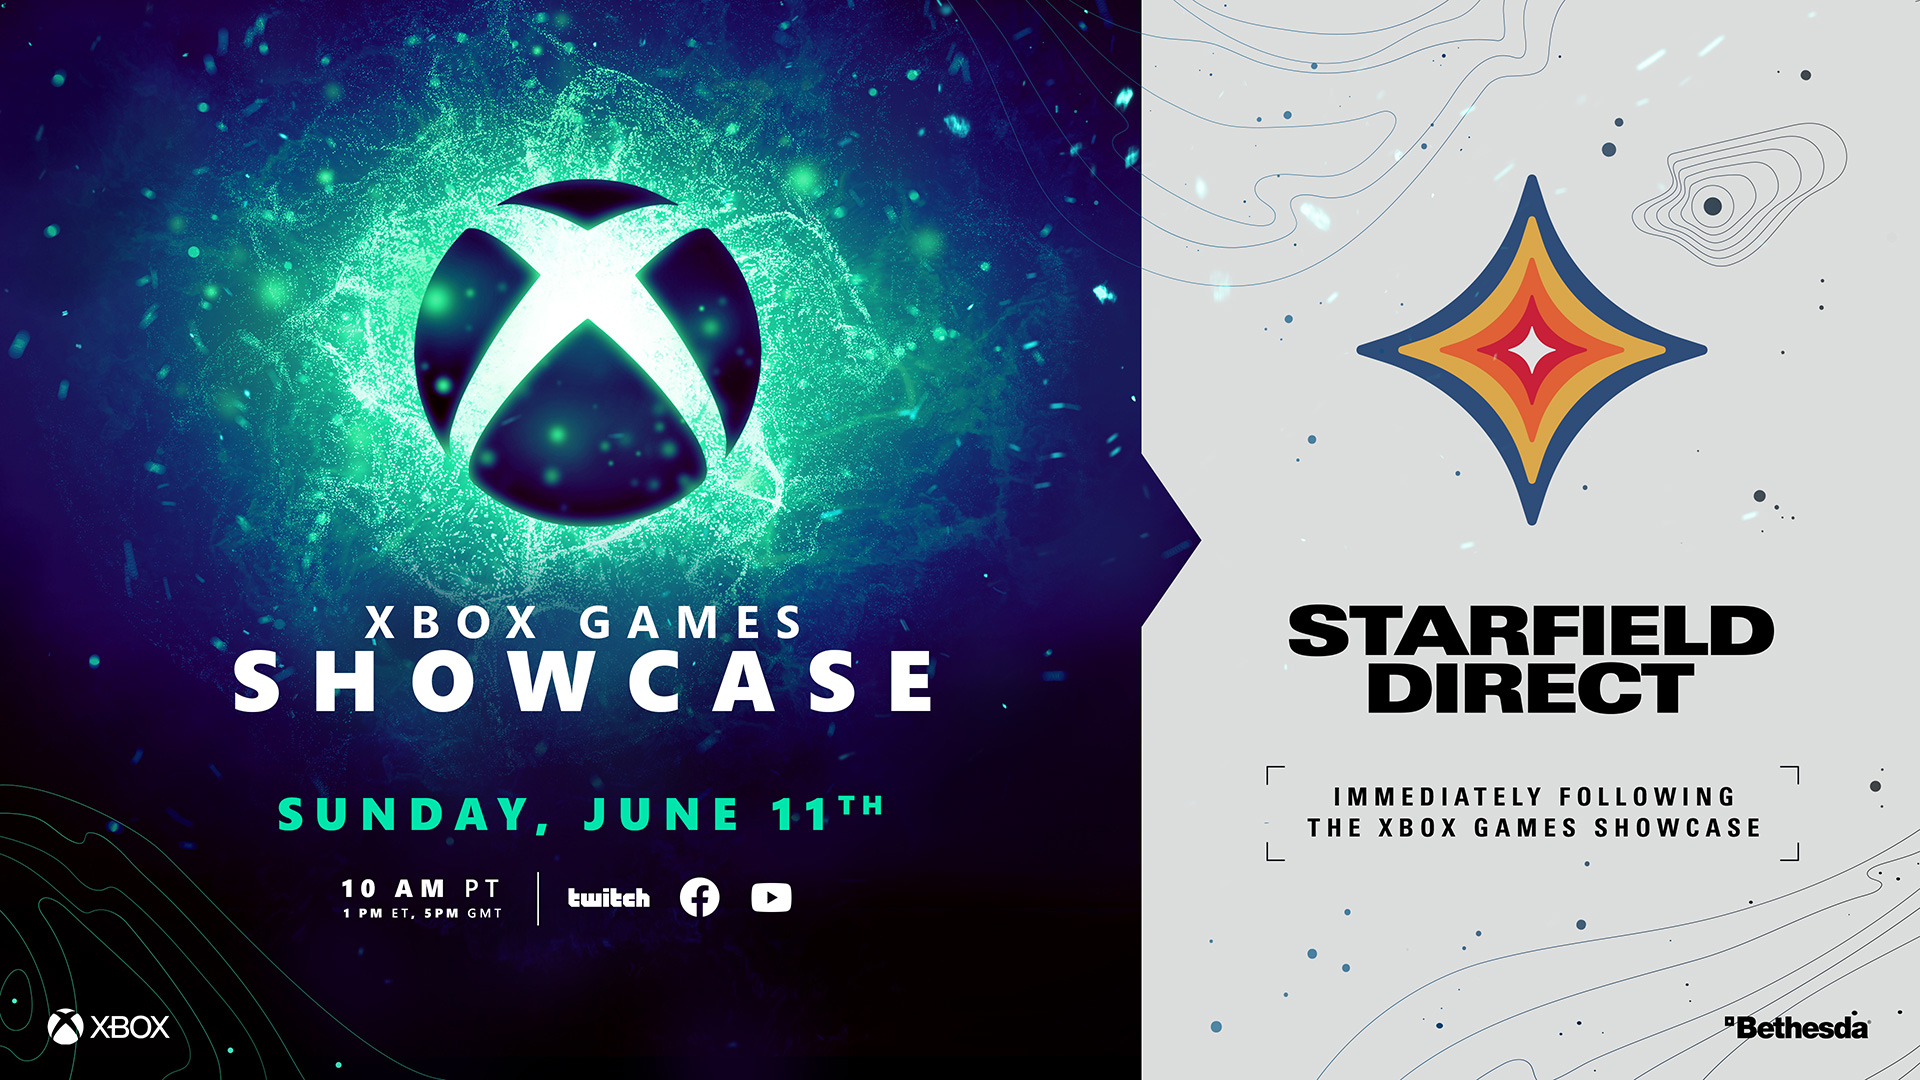 Prepárese para Xbox Games Showcase y Starfield Direct Double Feature que se transmitirá el 11 de junio